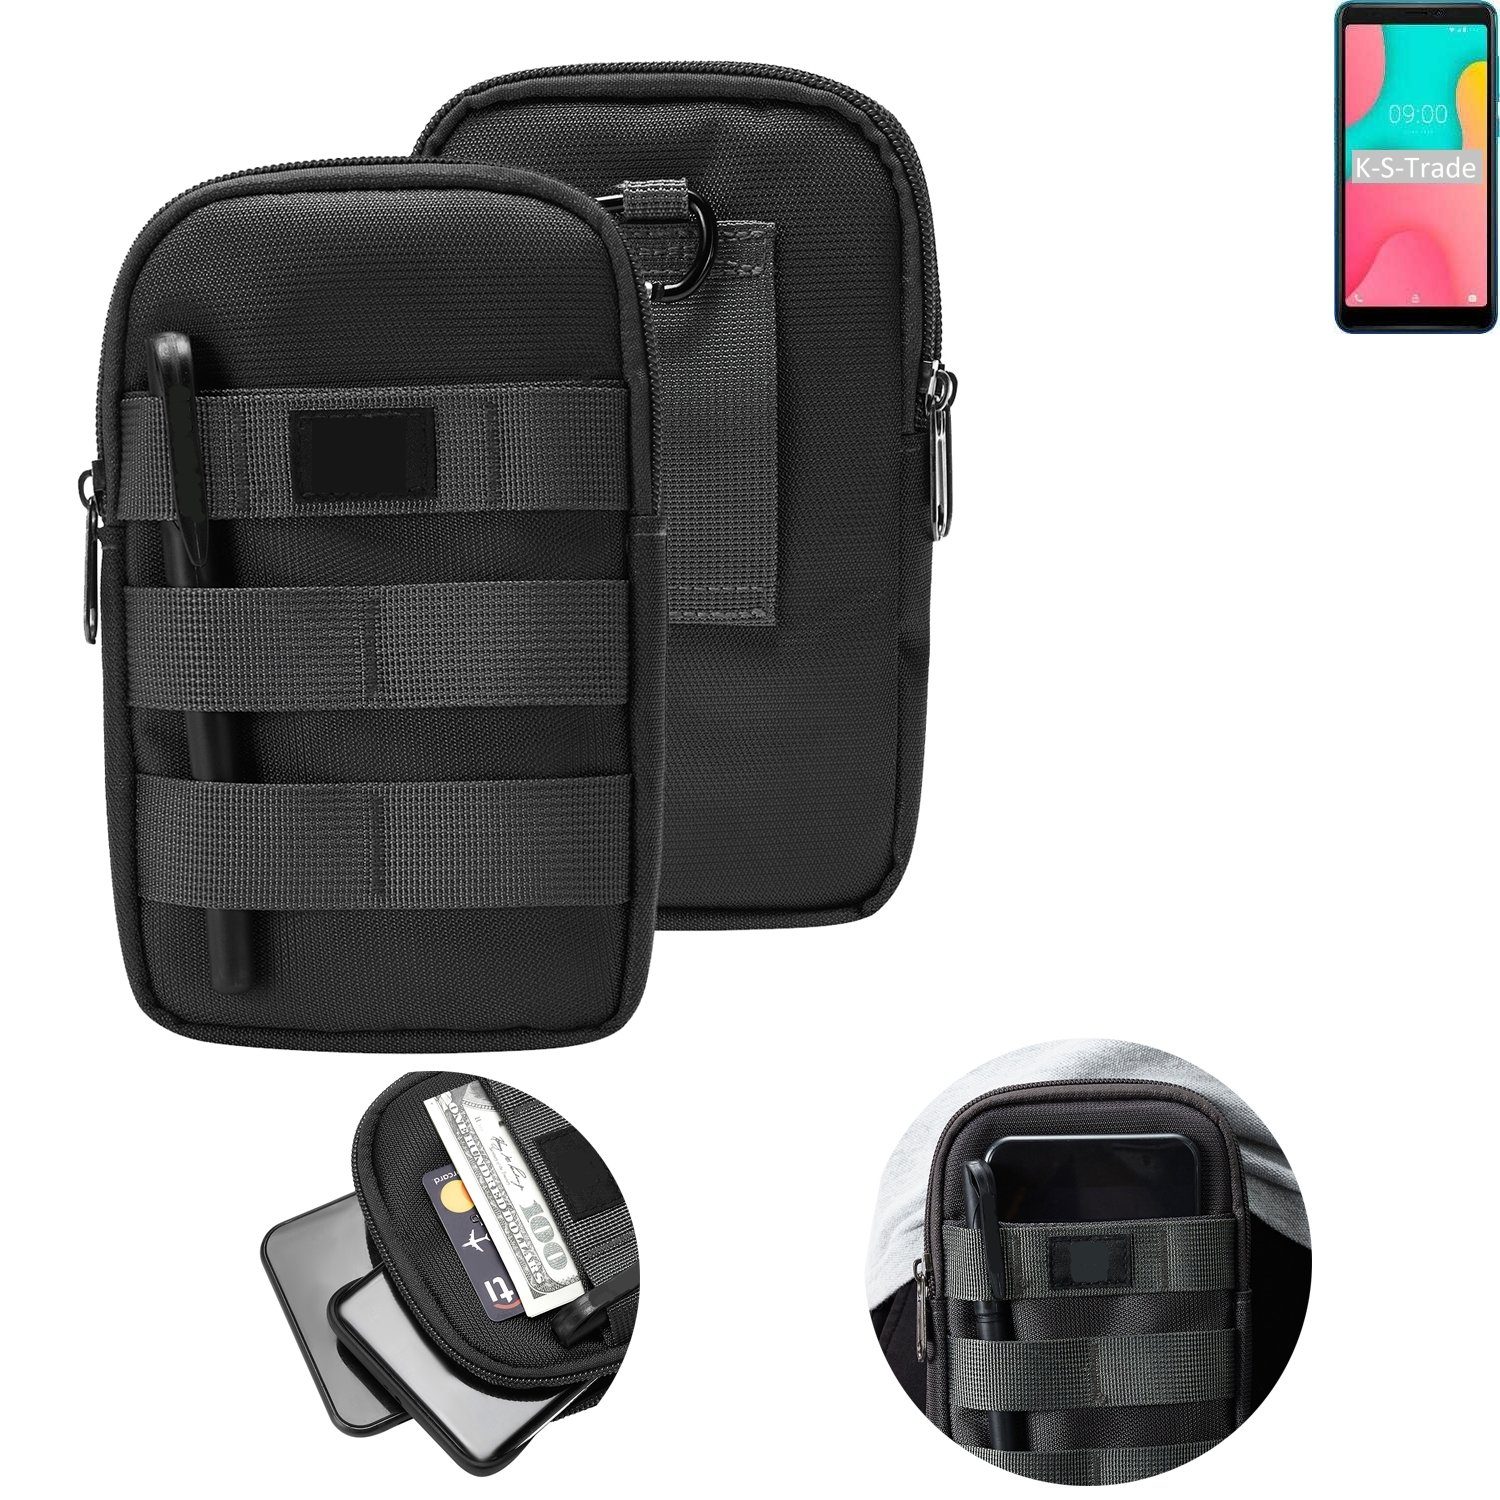 K-S-Trade Handyhülle, Holster Gürtel Tasche kompatibel mit Wiko Y60 Handy  Tasche Schutz Hülle dunkel-grau viele Fächer, 1x online kaufen | OTTO